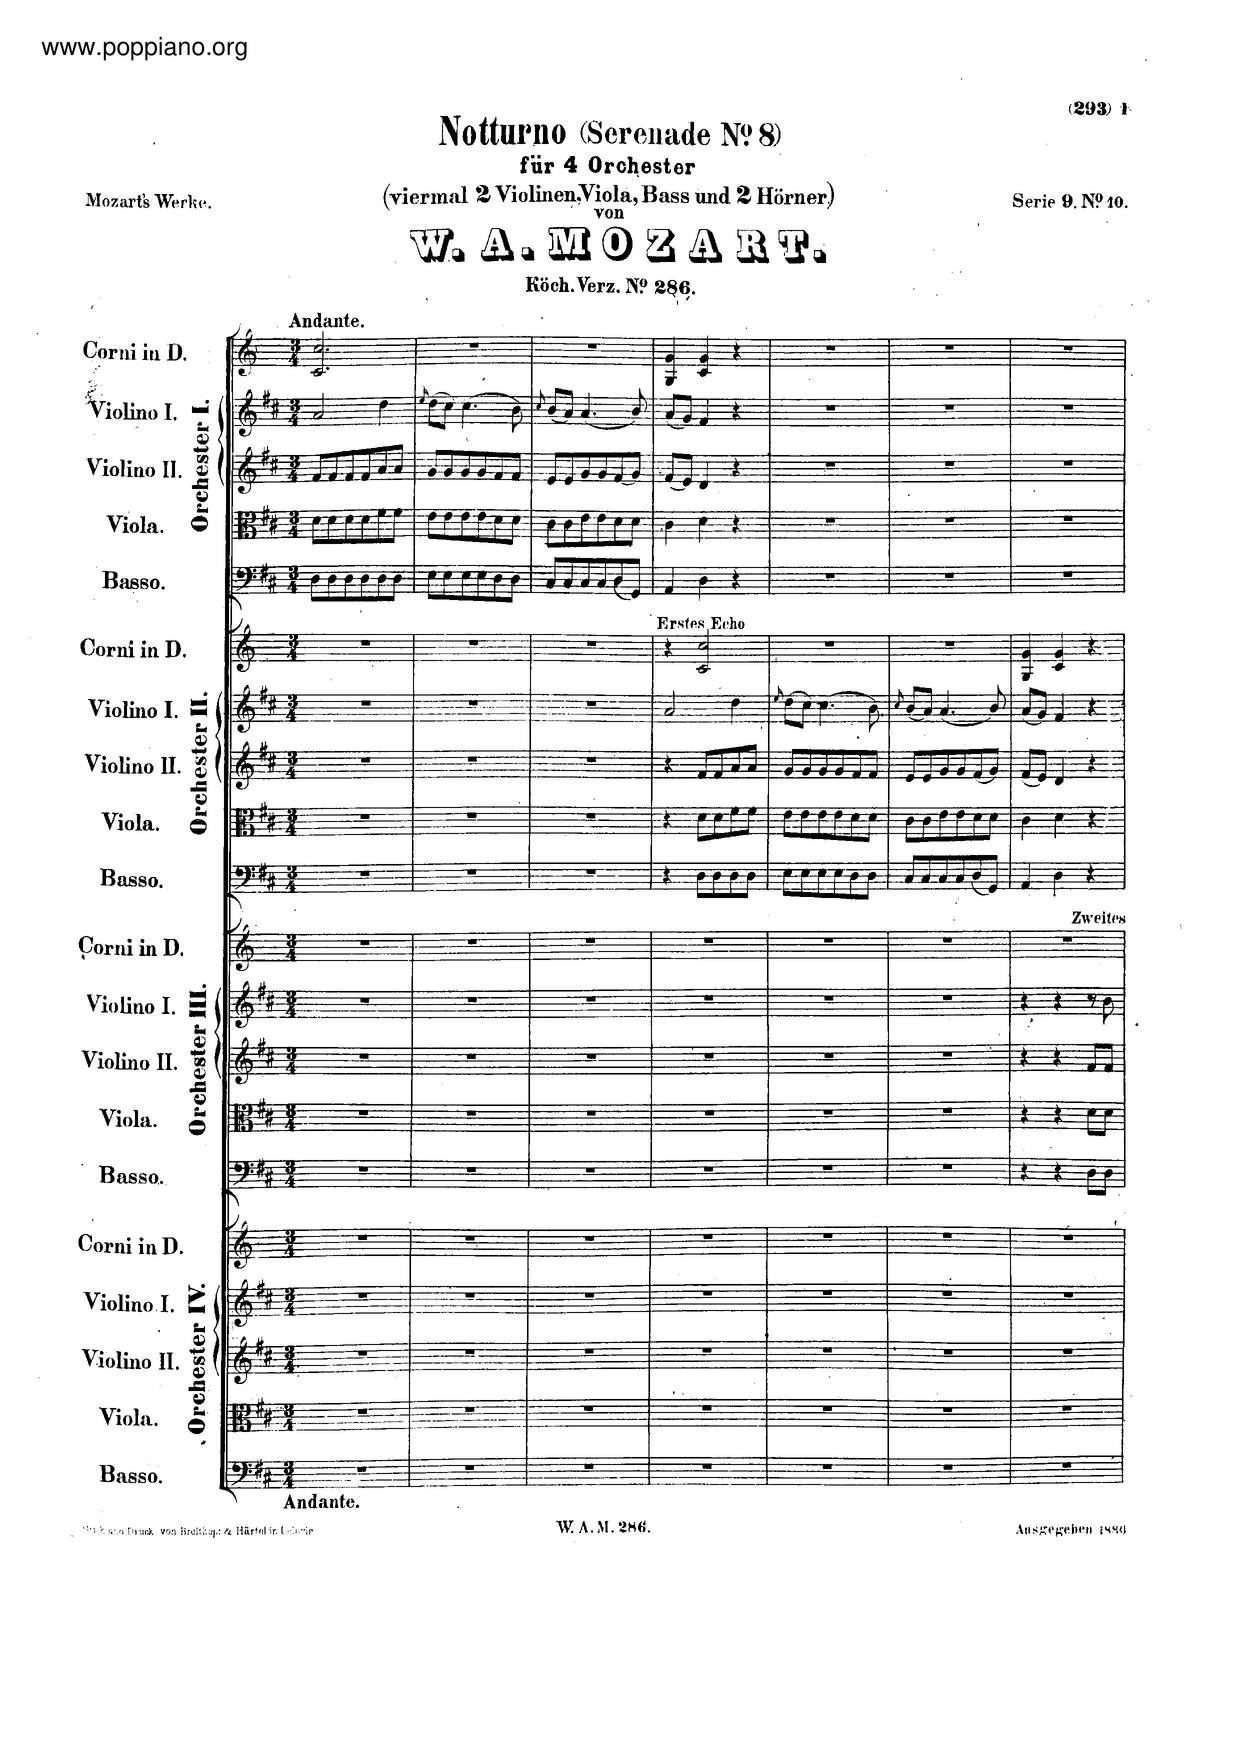 Notturno In D Major, K. 286/269A Score